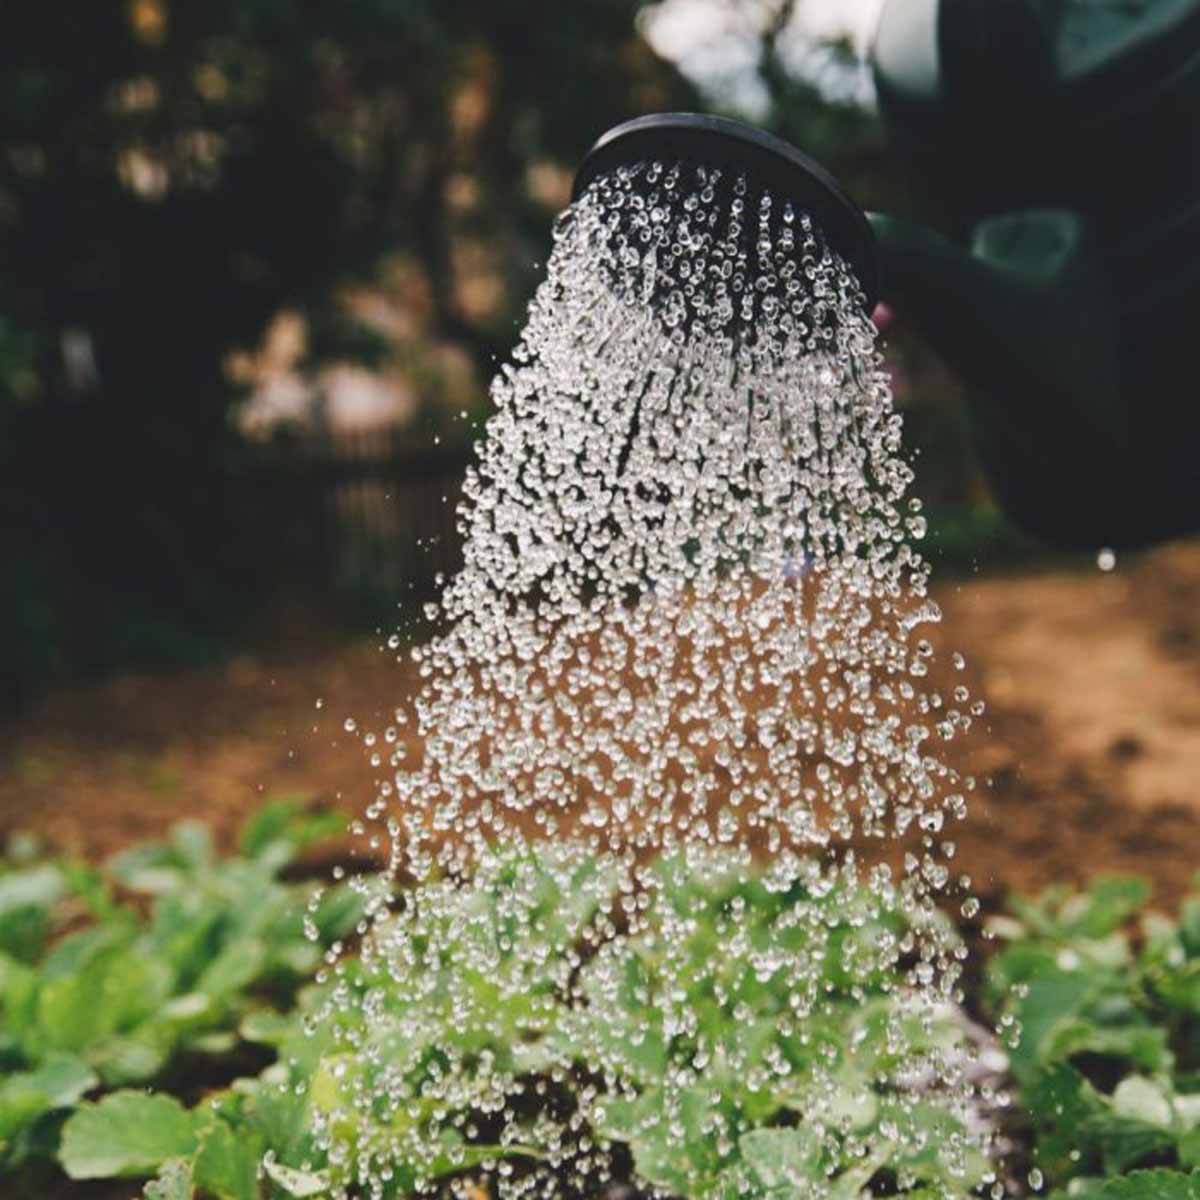 Irrigate il vostro orto la mattina!